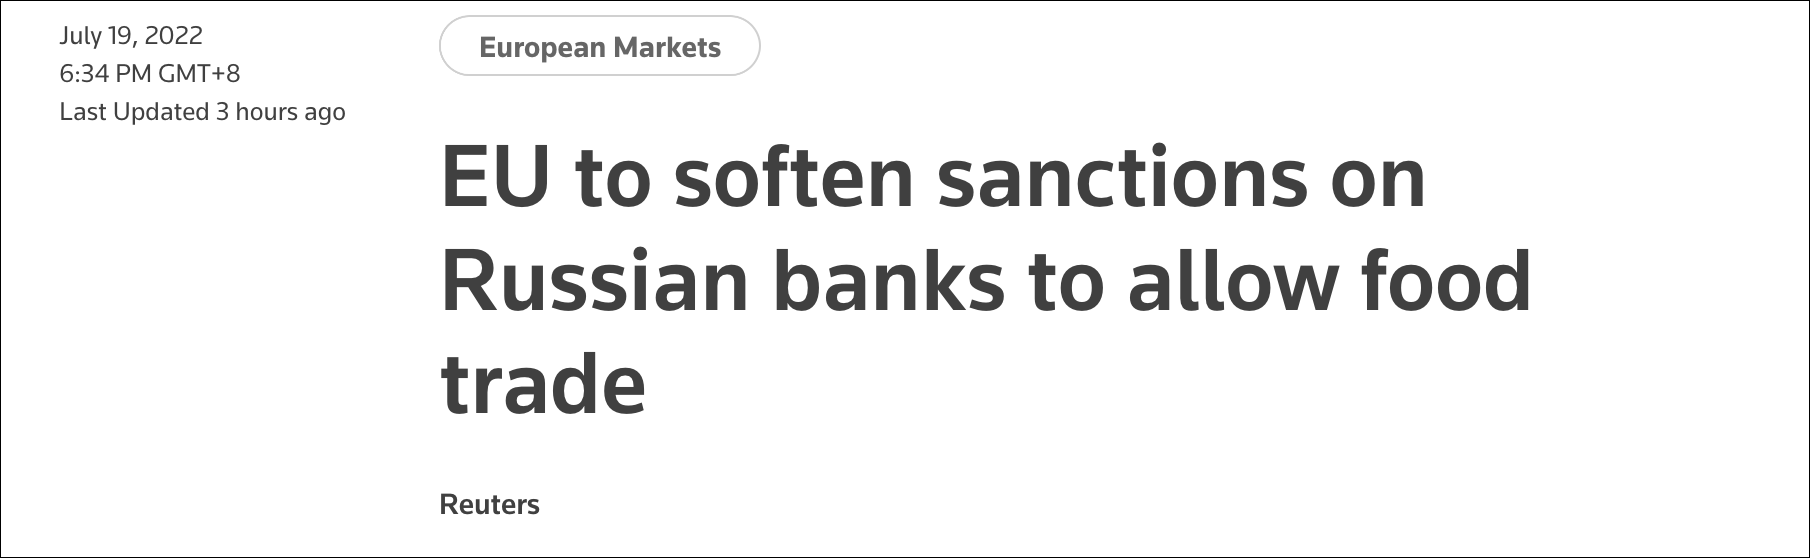 英媒：欧盟将放宽对俄罗斯银行的制裁，缓解粮食贸易瓶颈